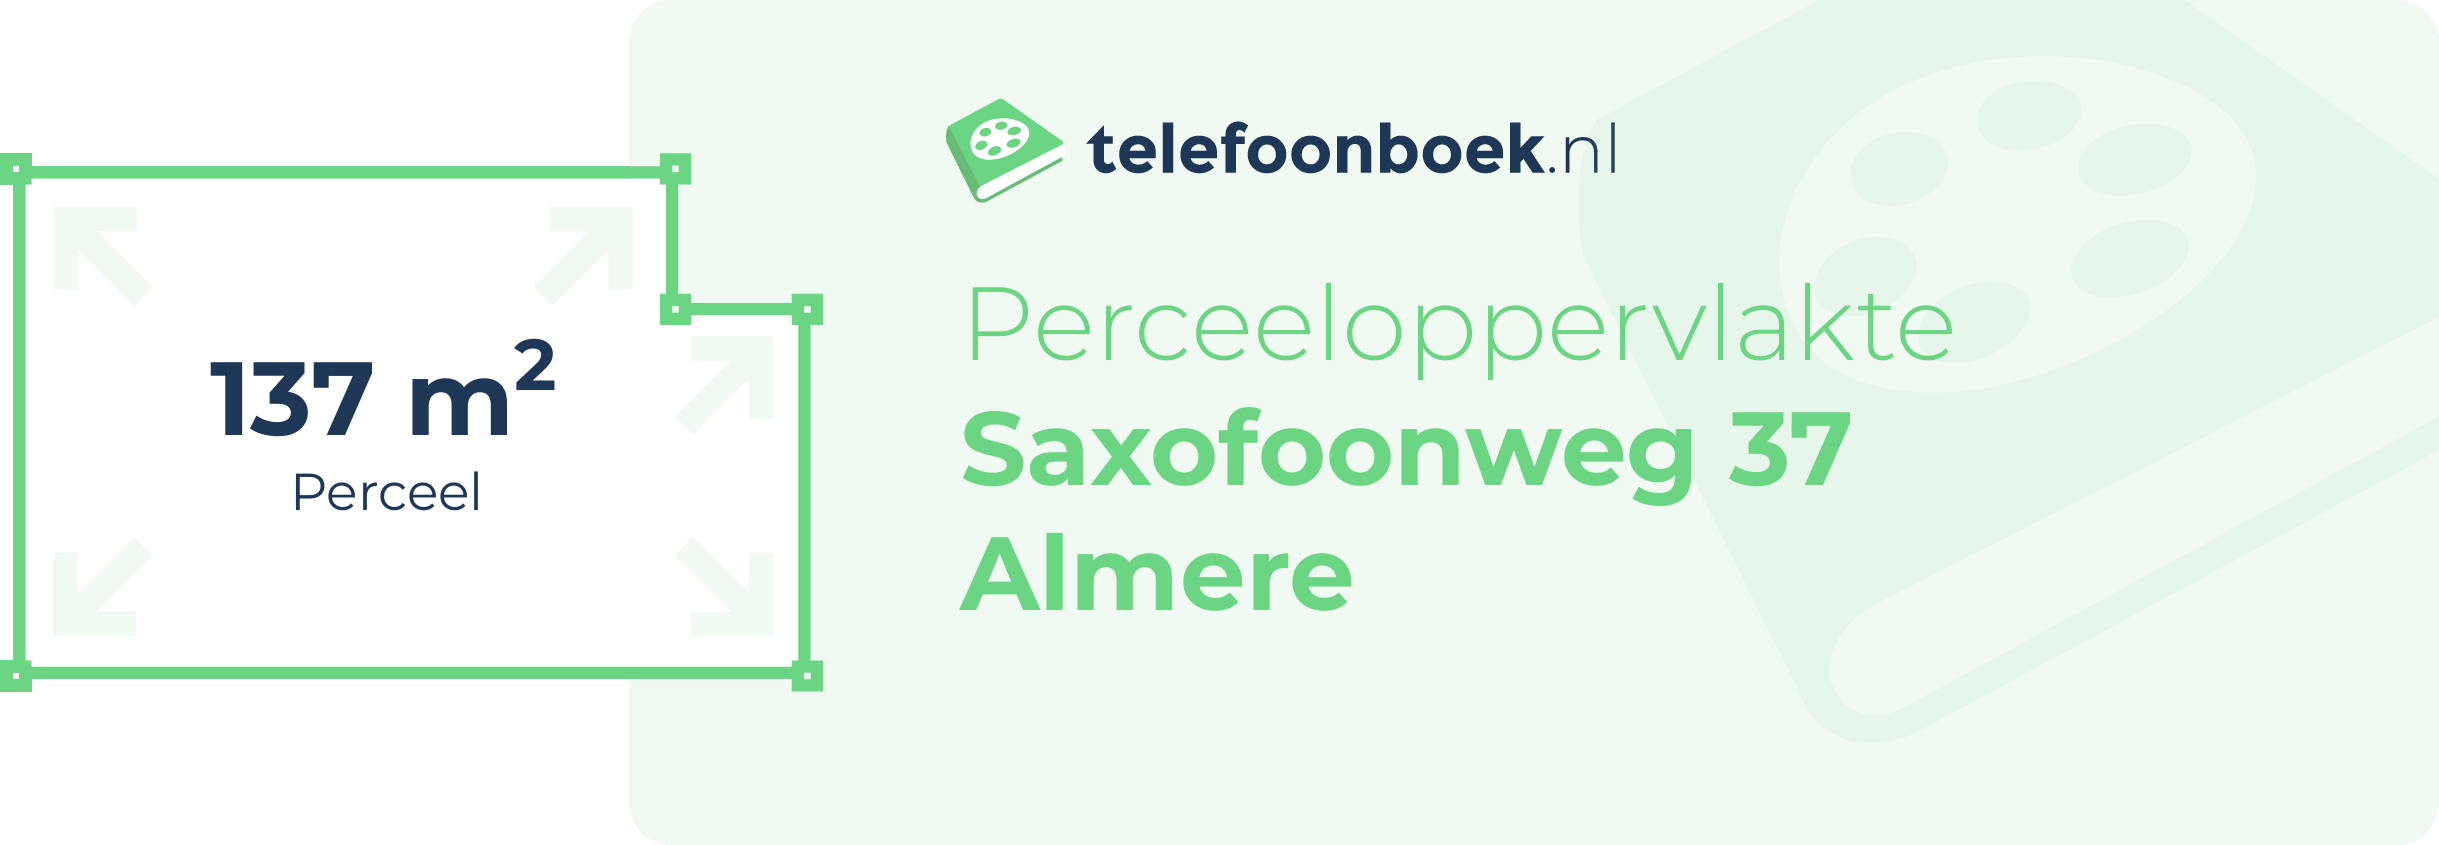 Perceeloppervlakte Saxofoonweg 37 Almere